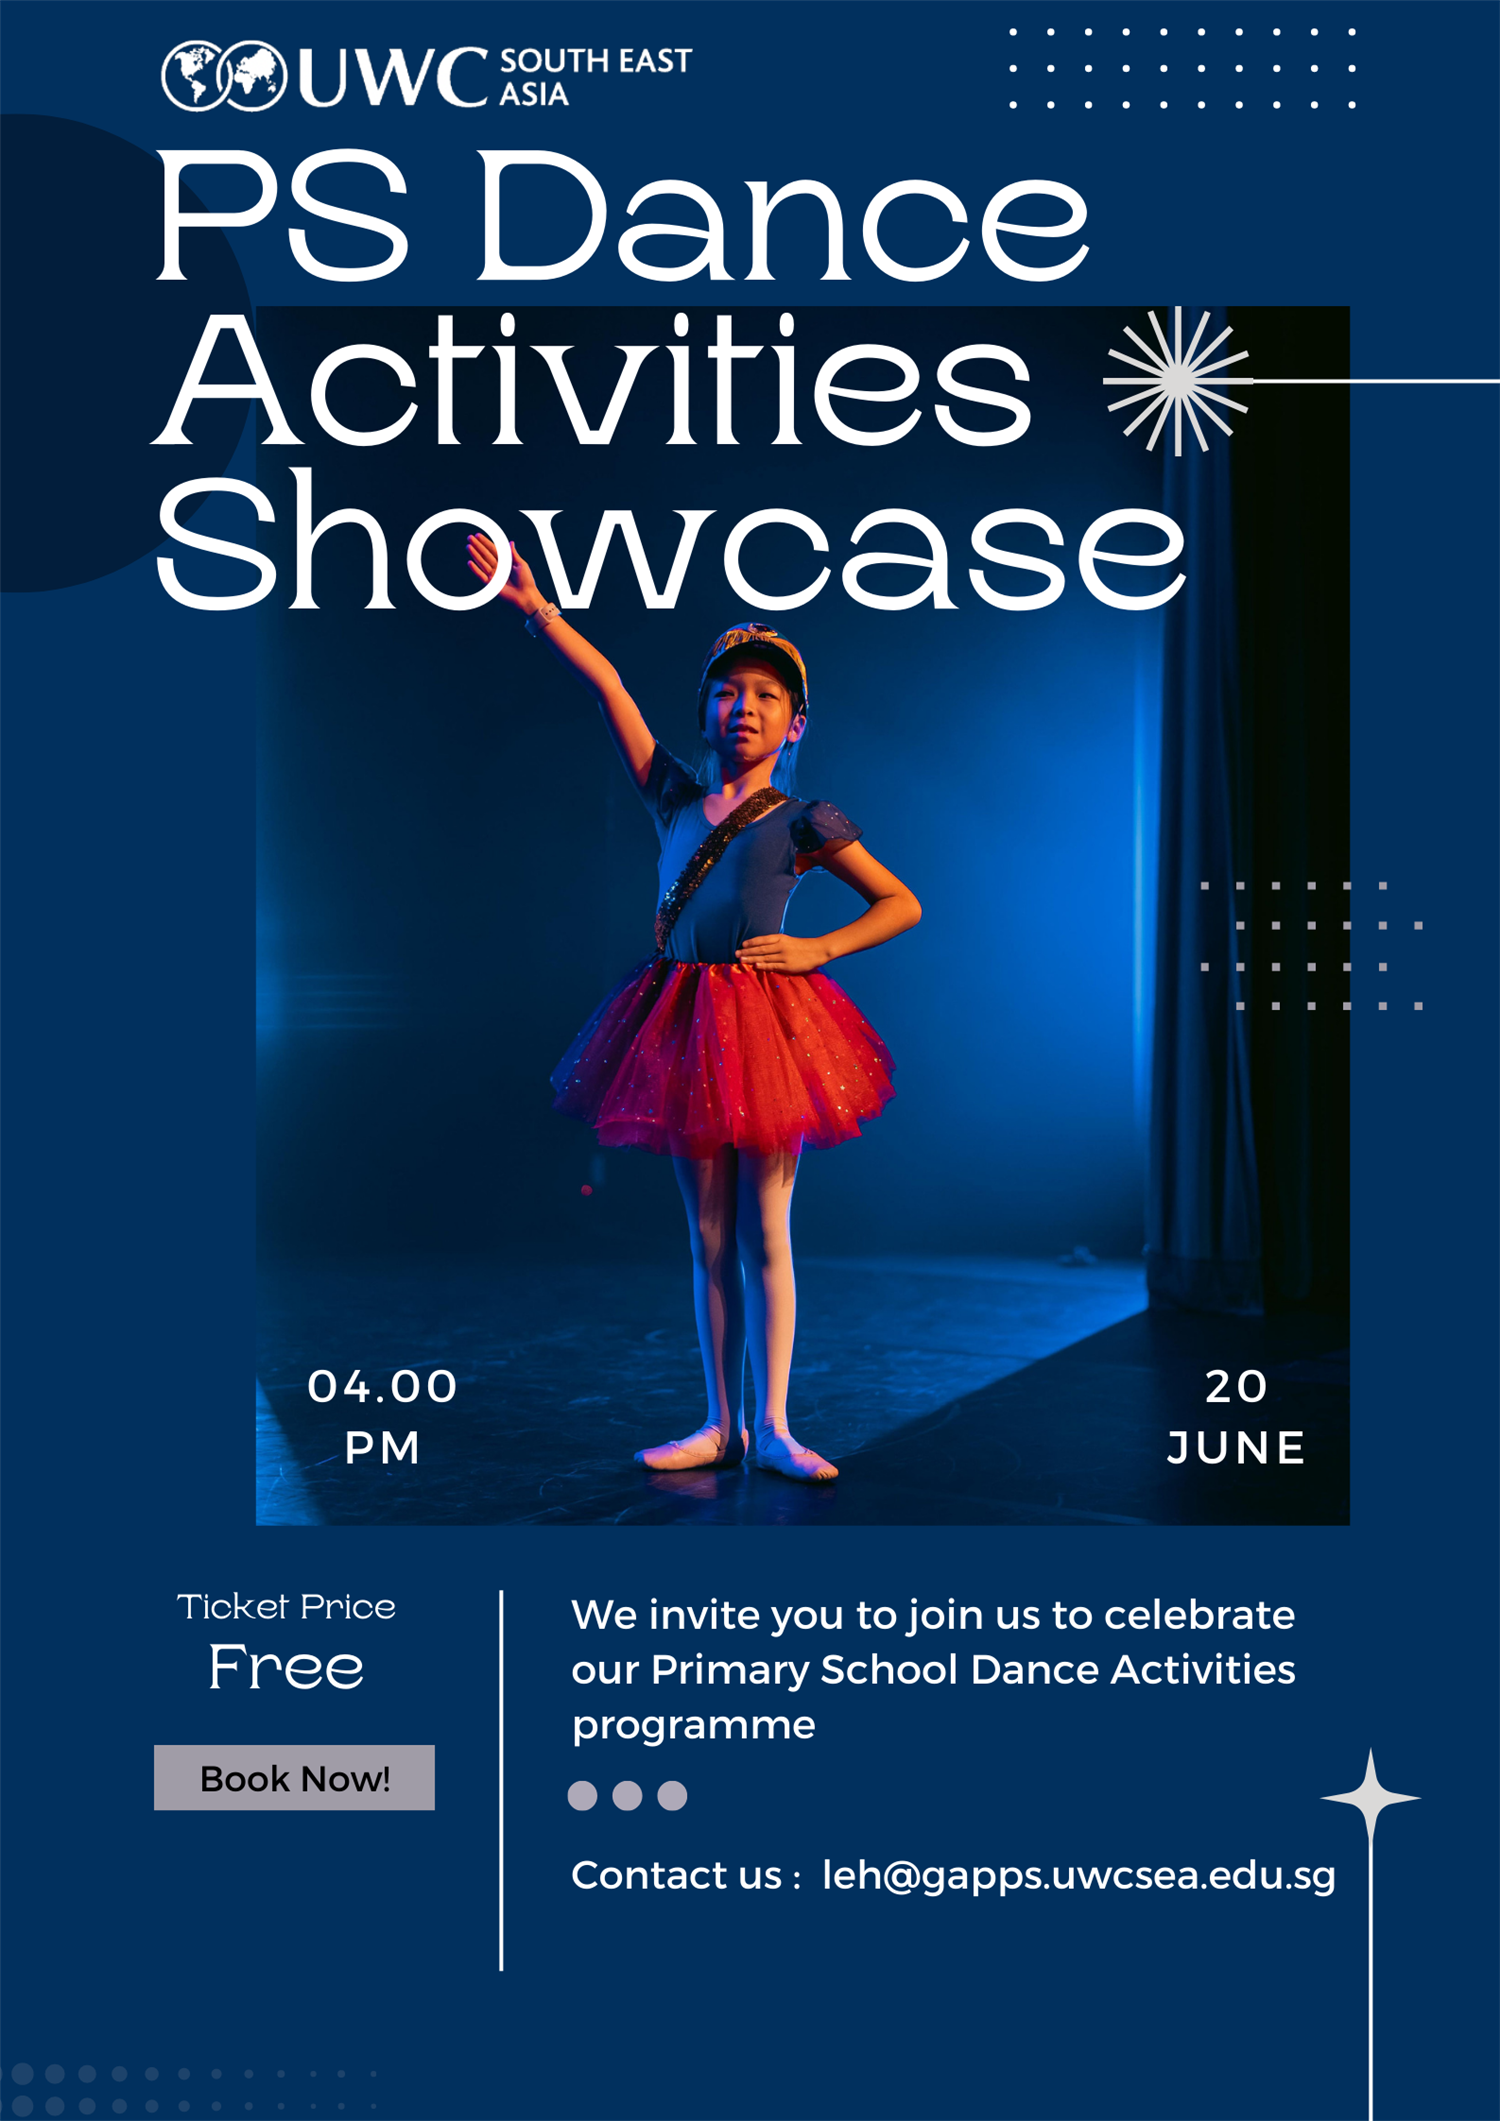 PS Dance Activities Showcase (East)  on Jun 20, 16:00@Black Box @ UWCSEA East - Buy tickets and Get information on UWCSEA Ticket Hub uwcsea